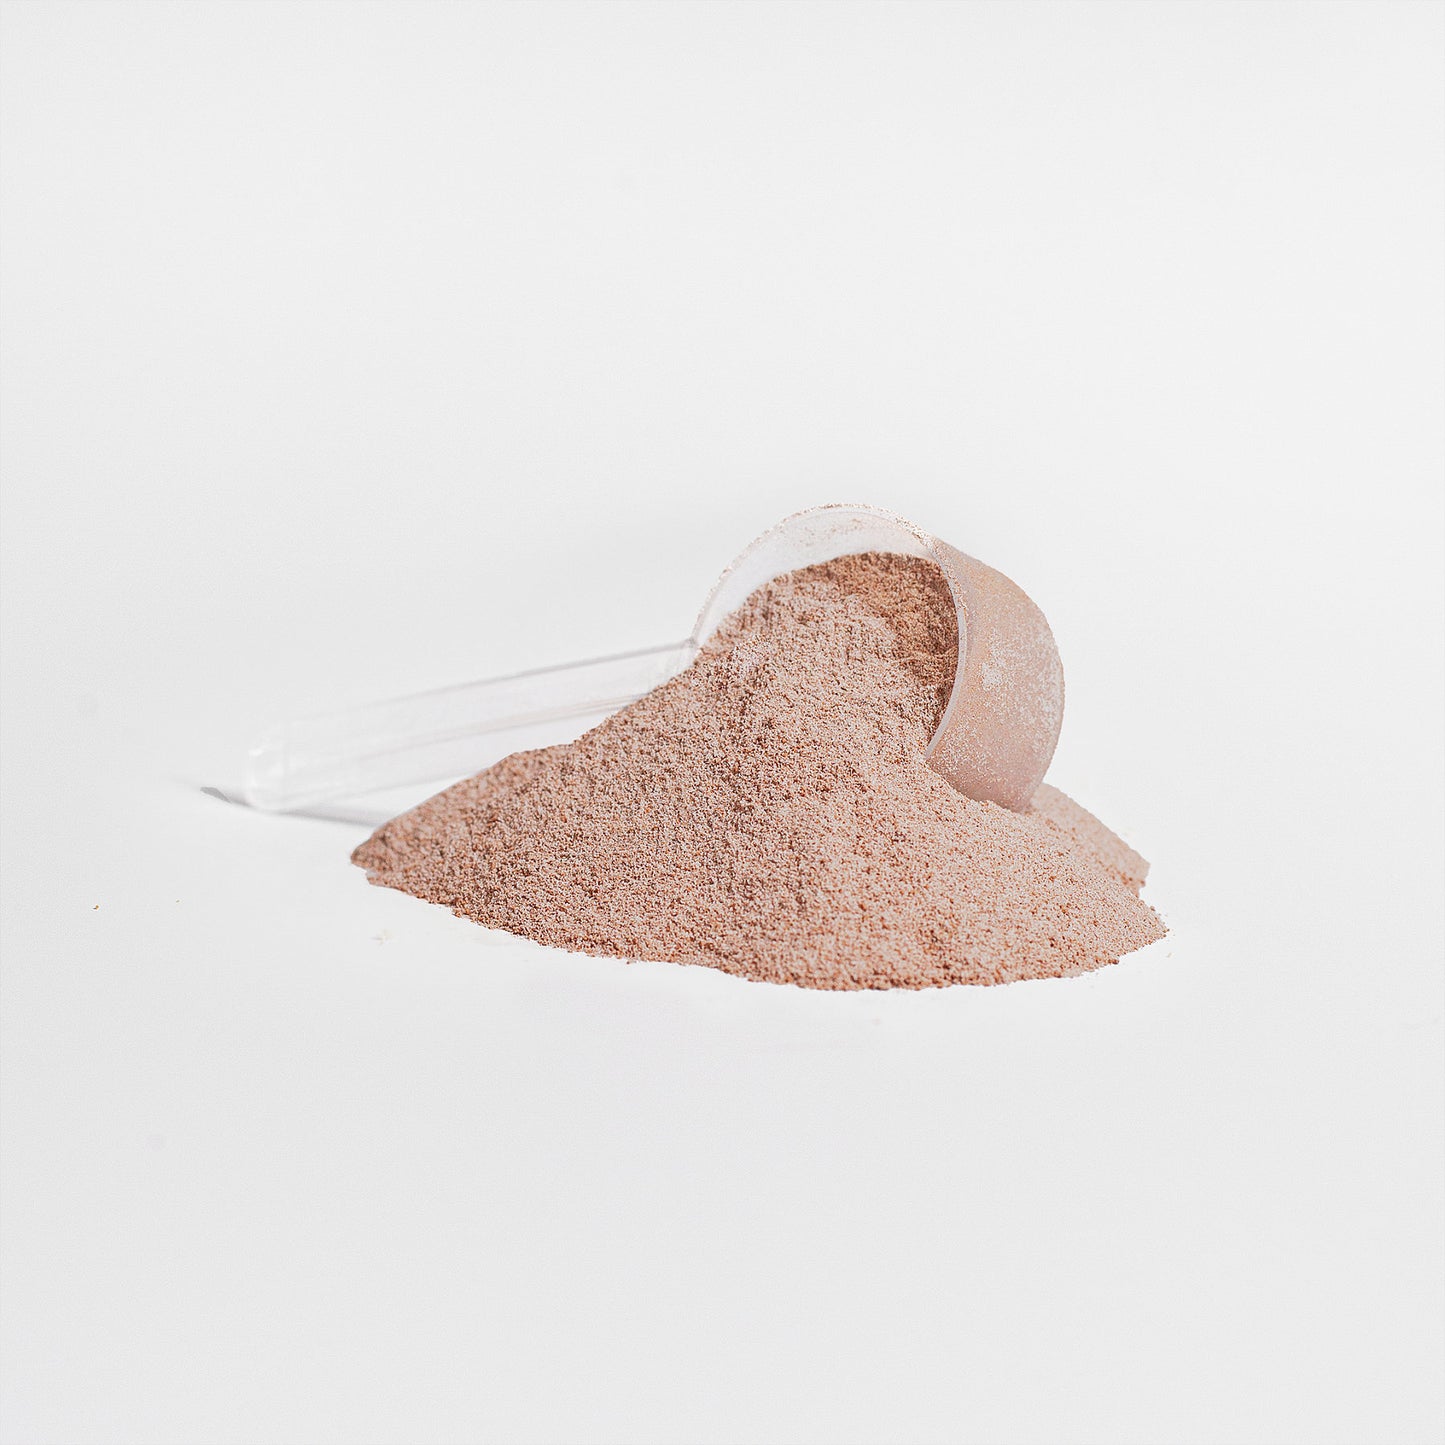 Grass-Fed Chocolate Collagen Peptides Powder